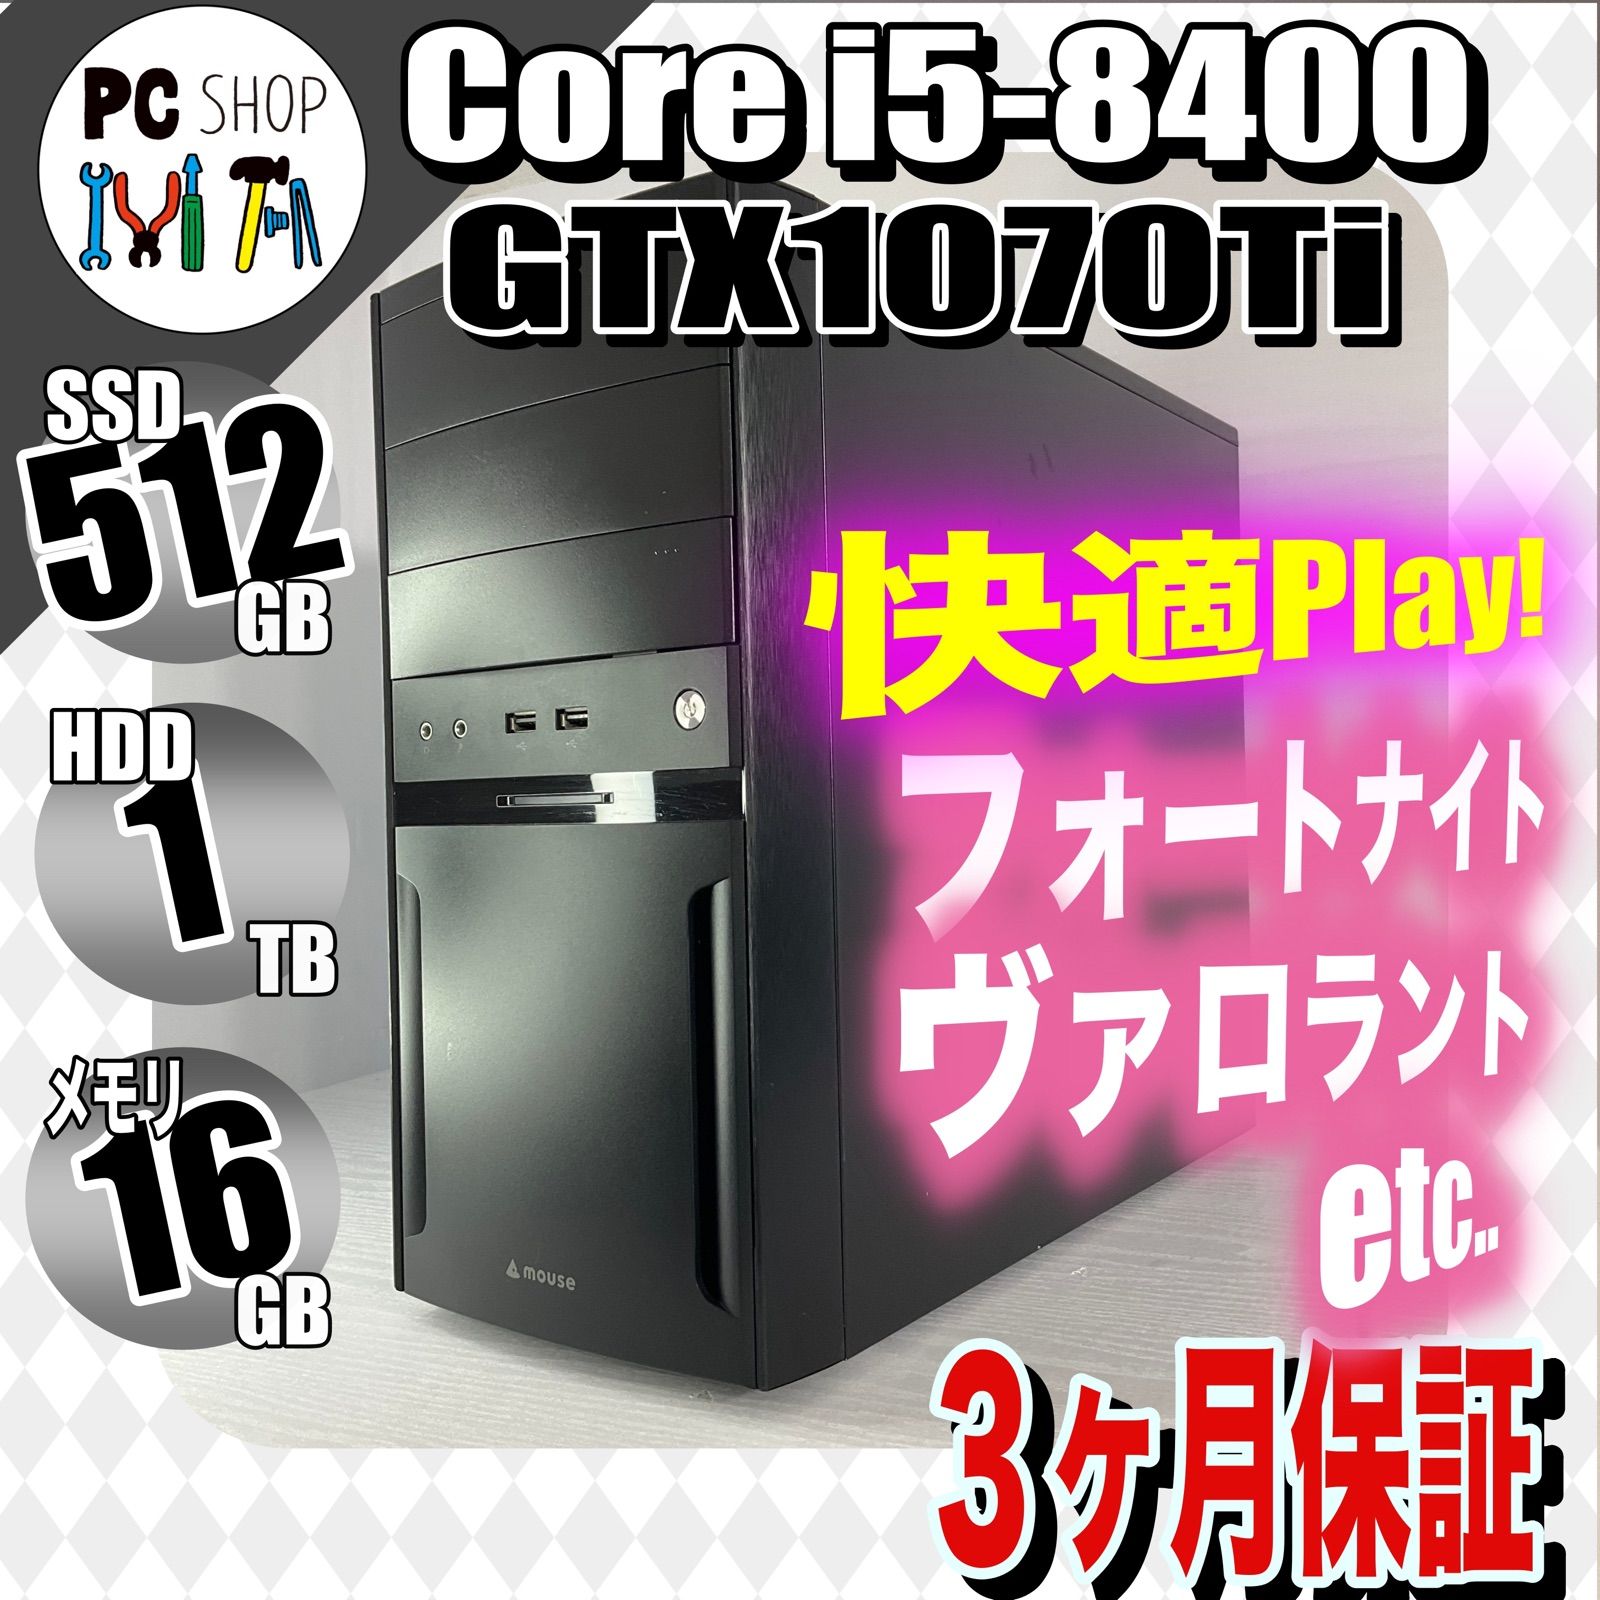 MA-010093］ゲーミングＰＣ Core i5-8400 GTX1070Ti SSD 512GB 初心者